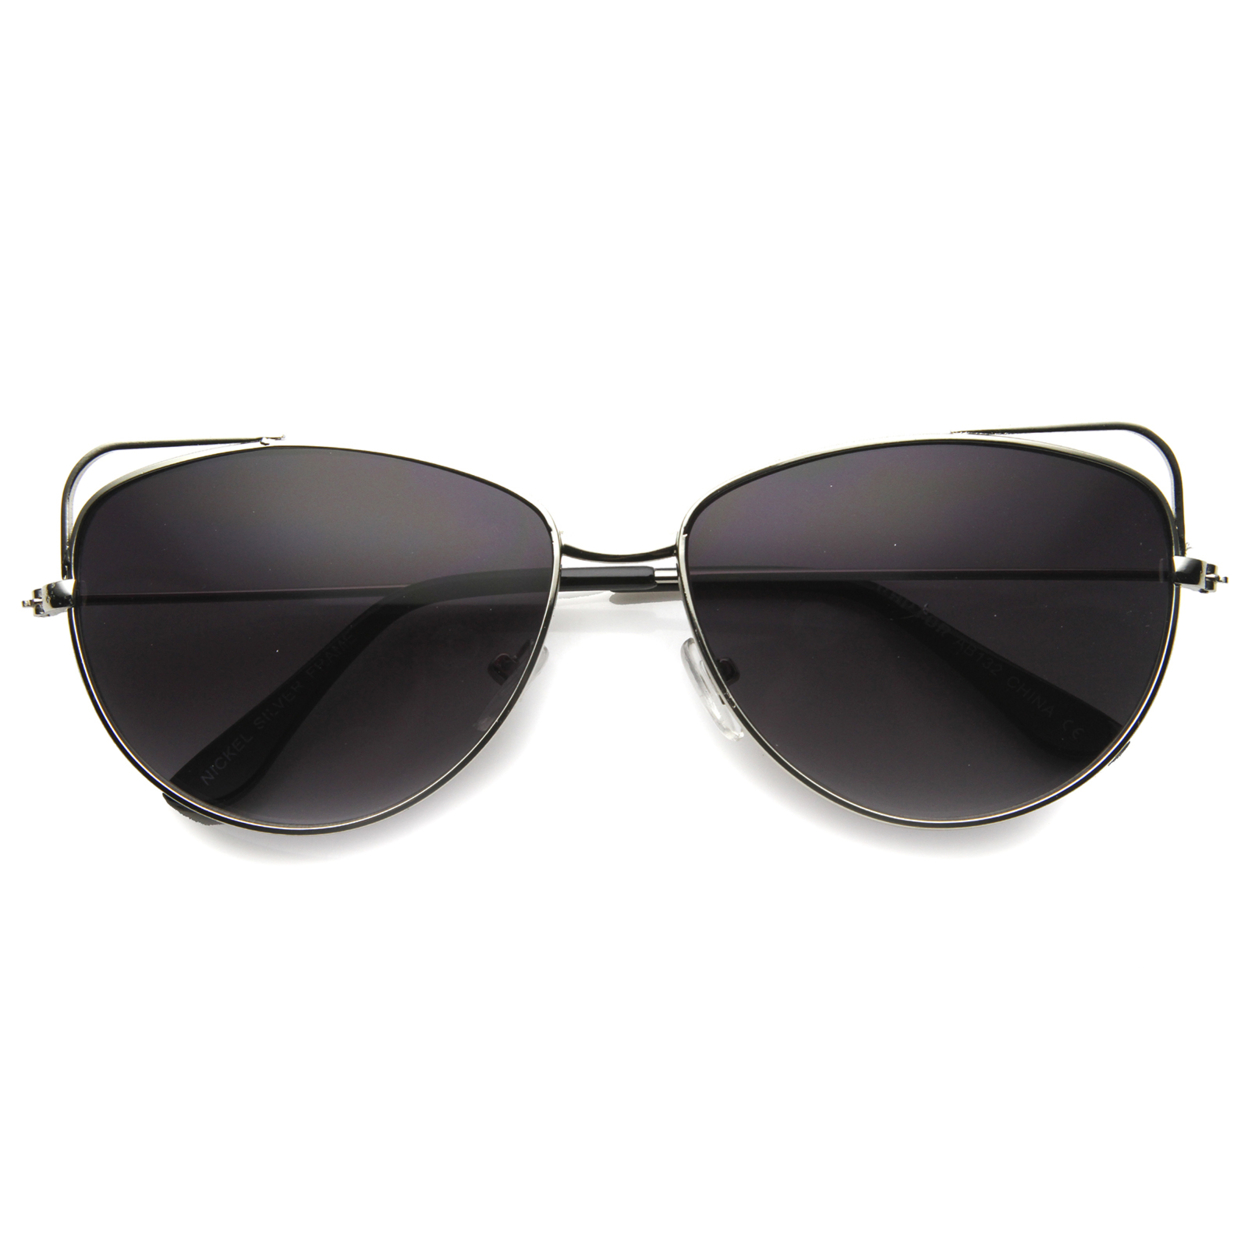 Mens Aviator Sunglasses With UV400 Protected Composite Lens 9958 - Silver / Smoke